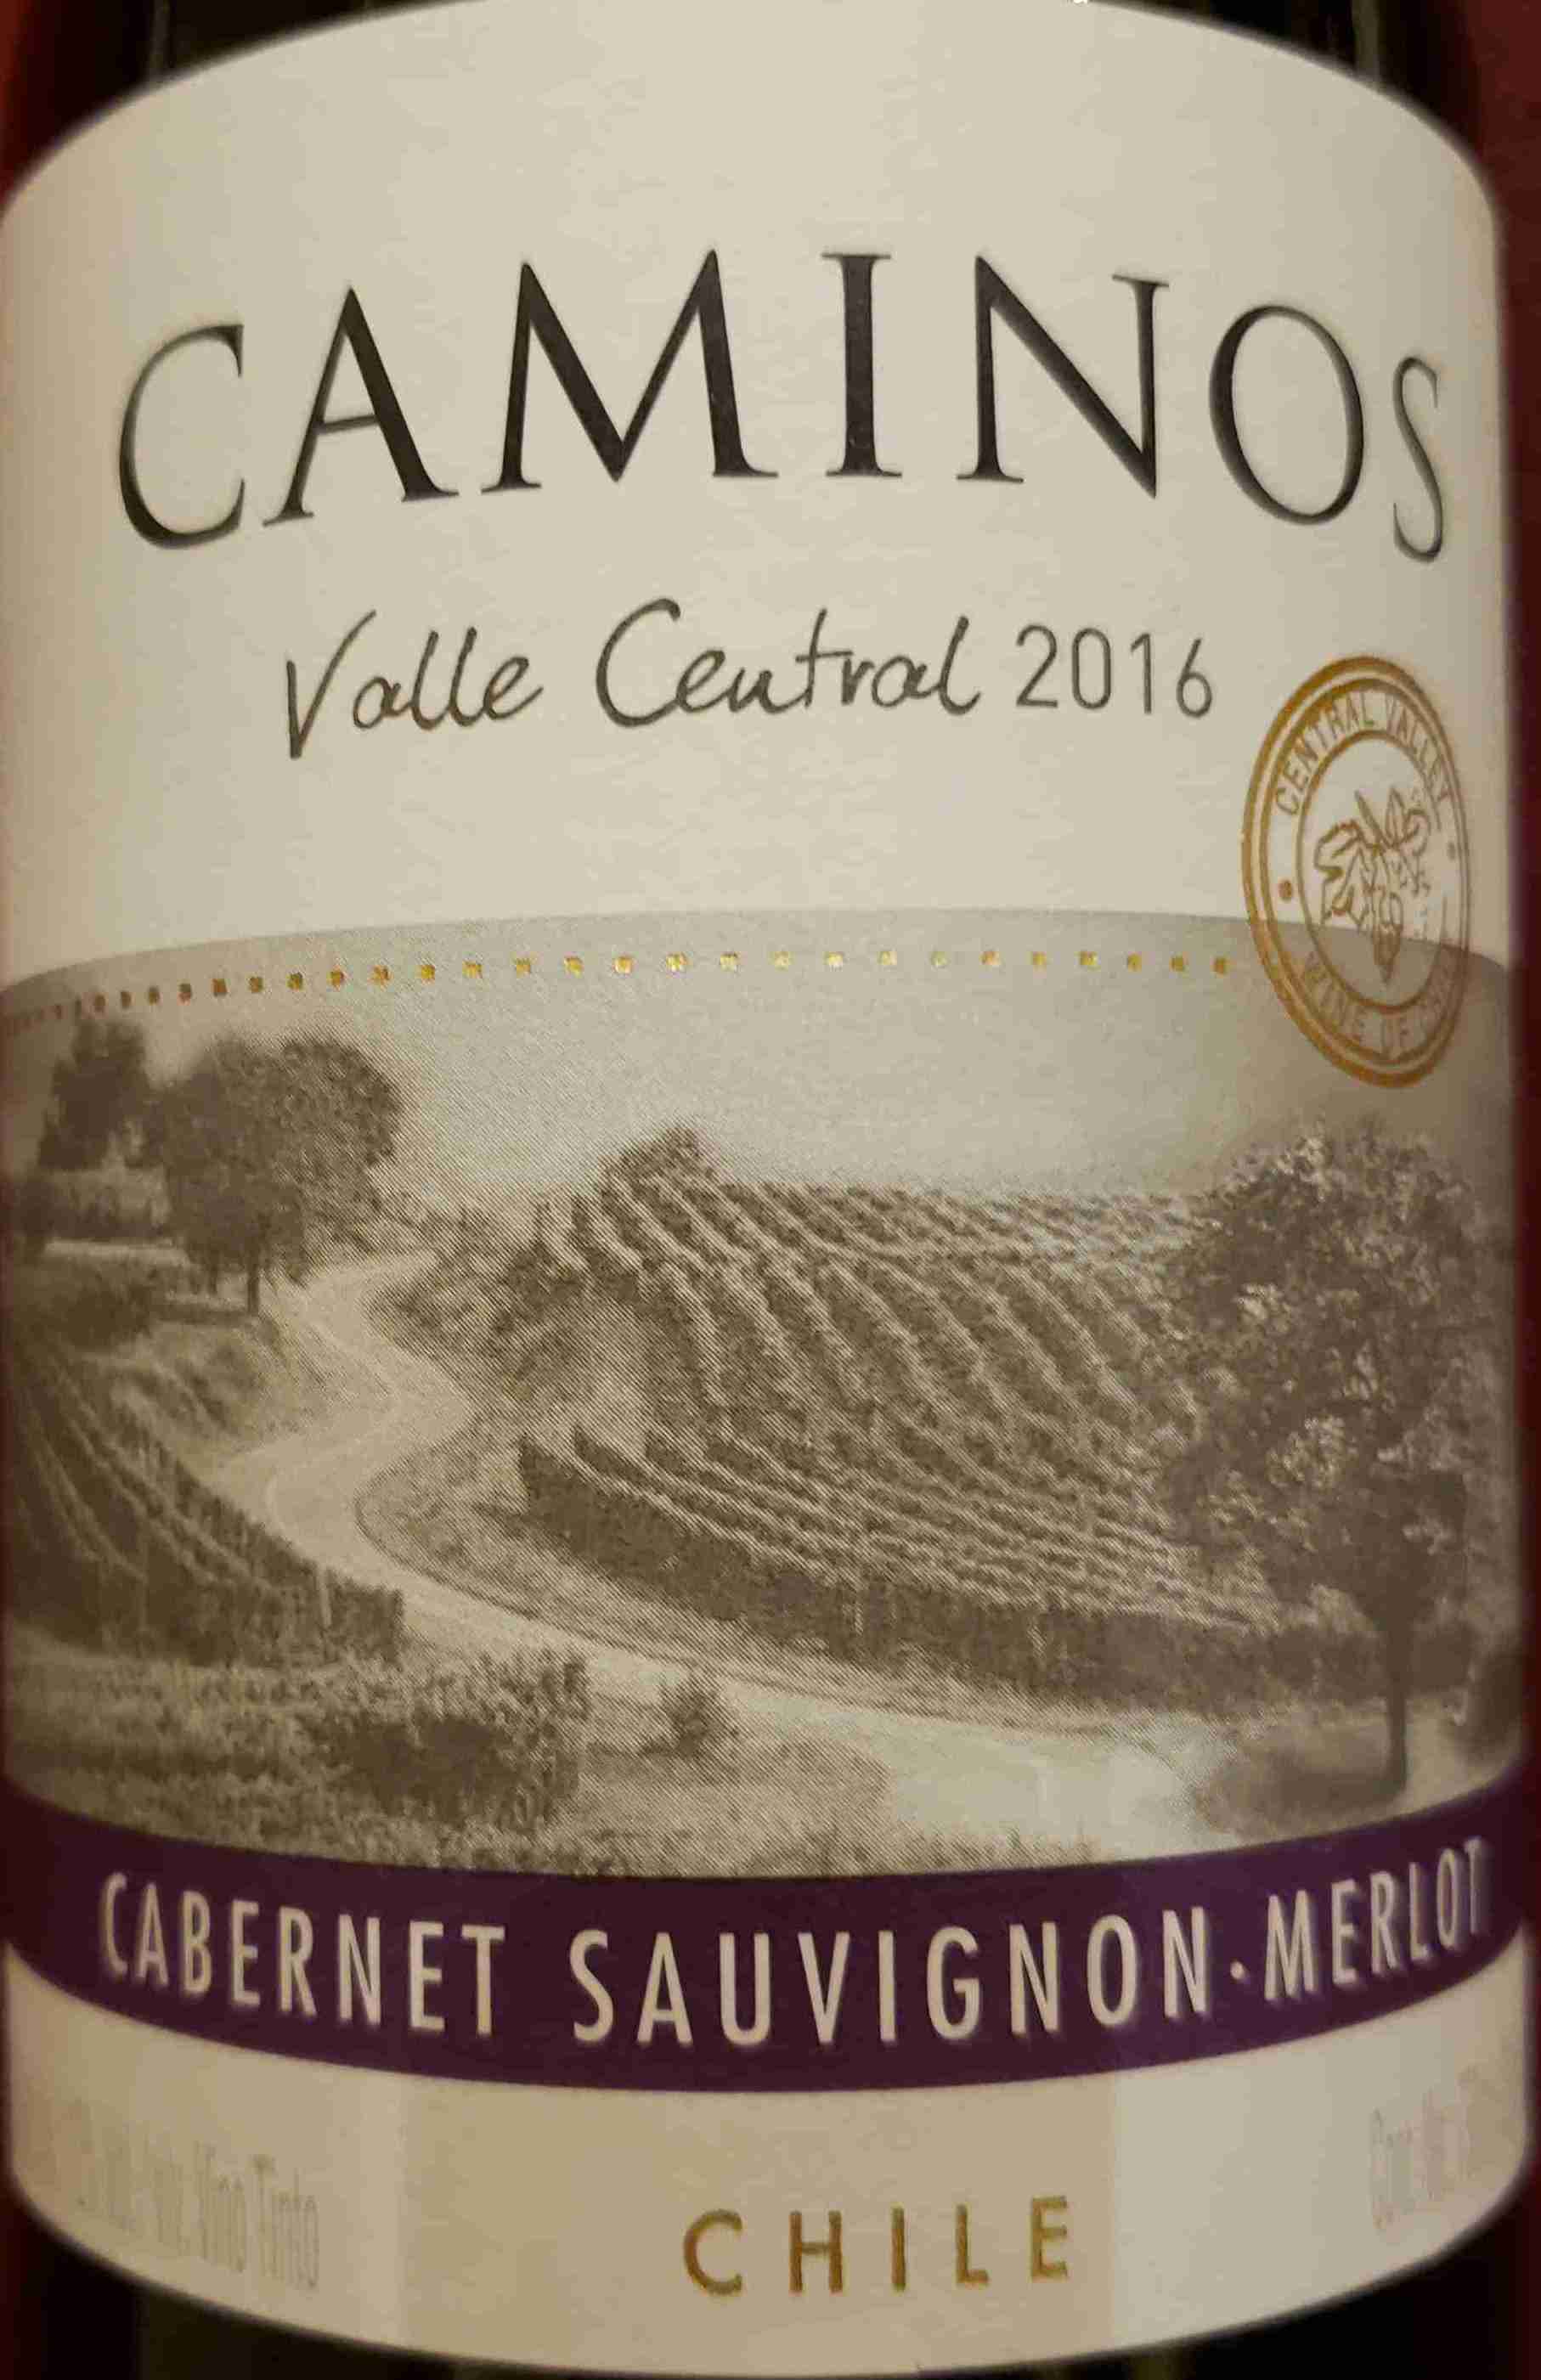 -安迪娜酒庄葡萄酒-价格-评价-中文名-红酒世界网 Valley, Central Cabernet Andina Terra Caminos Sauvignon Chile Merlot,